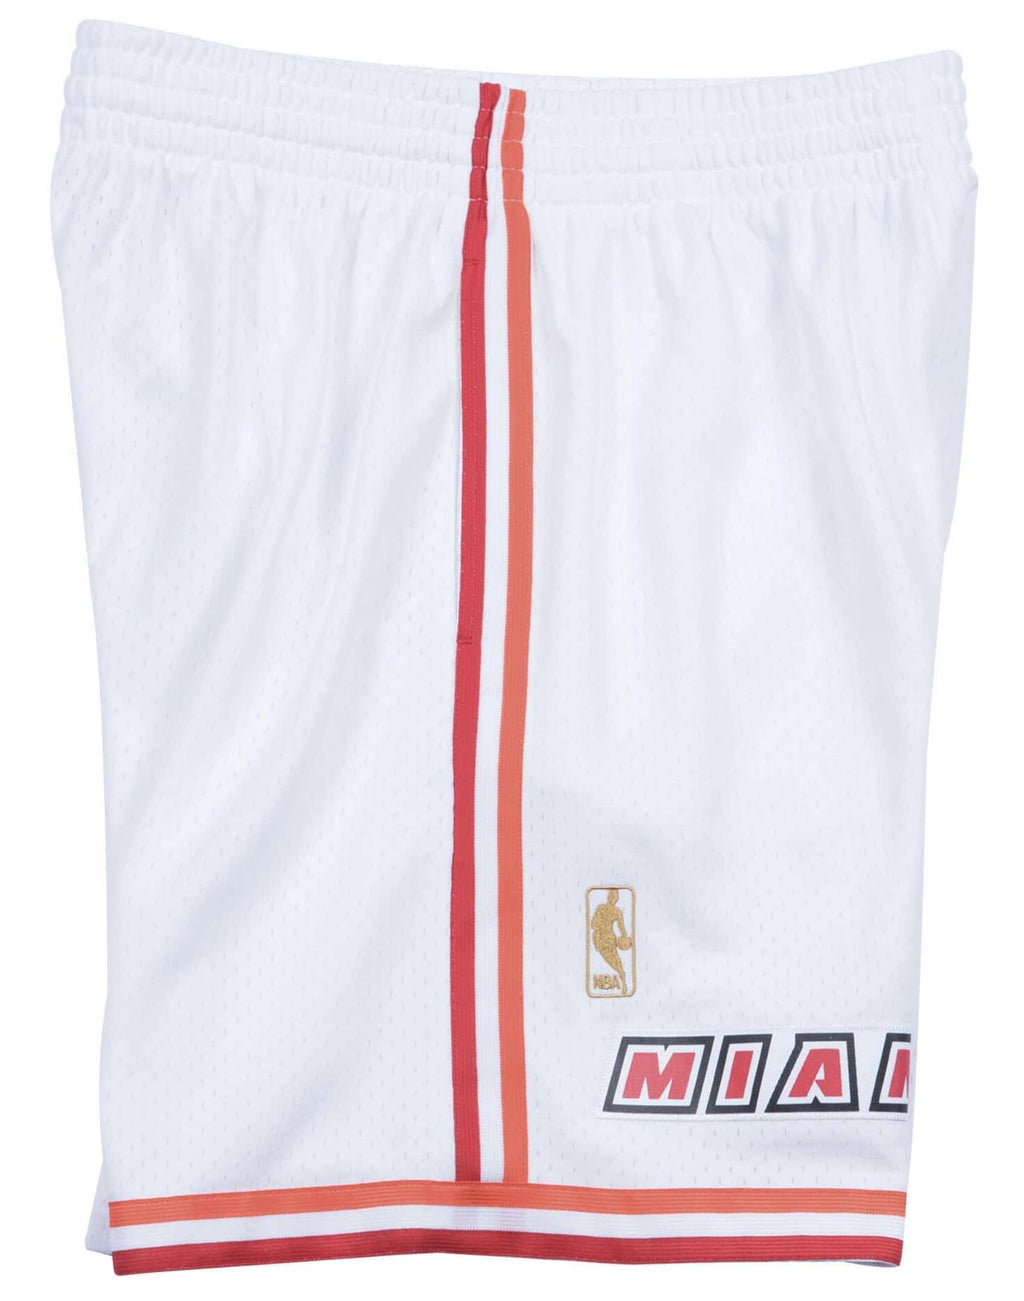 Miami heat white shorts